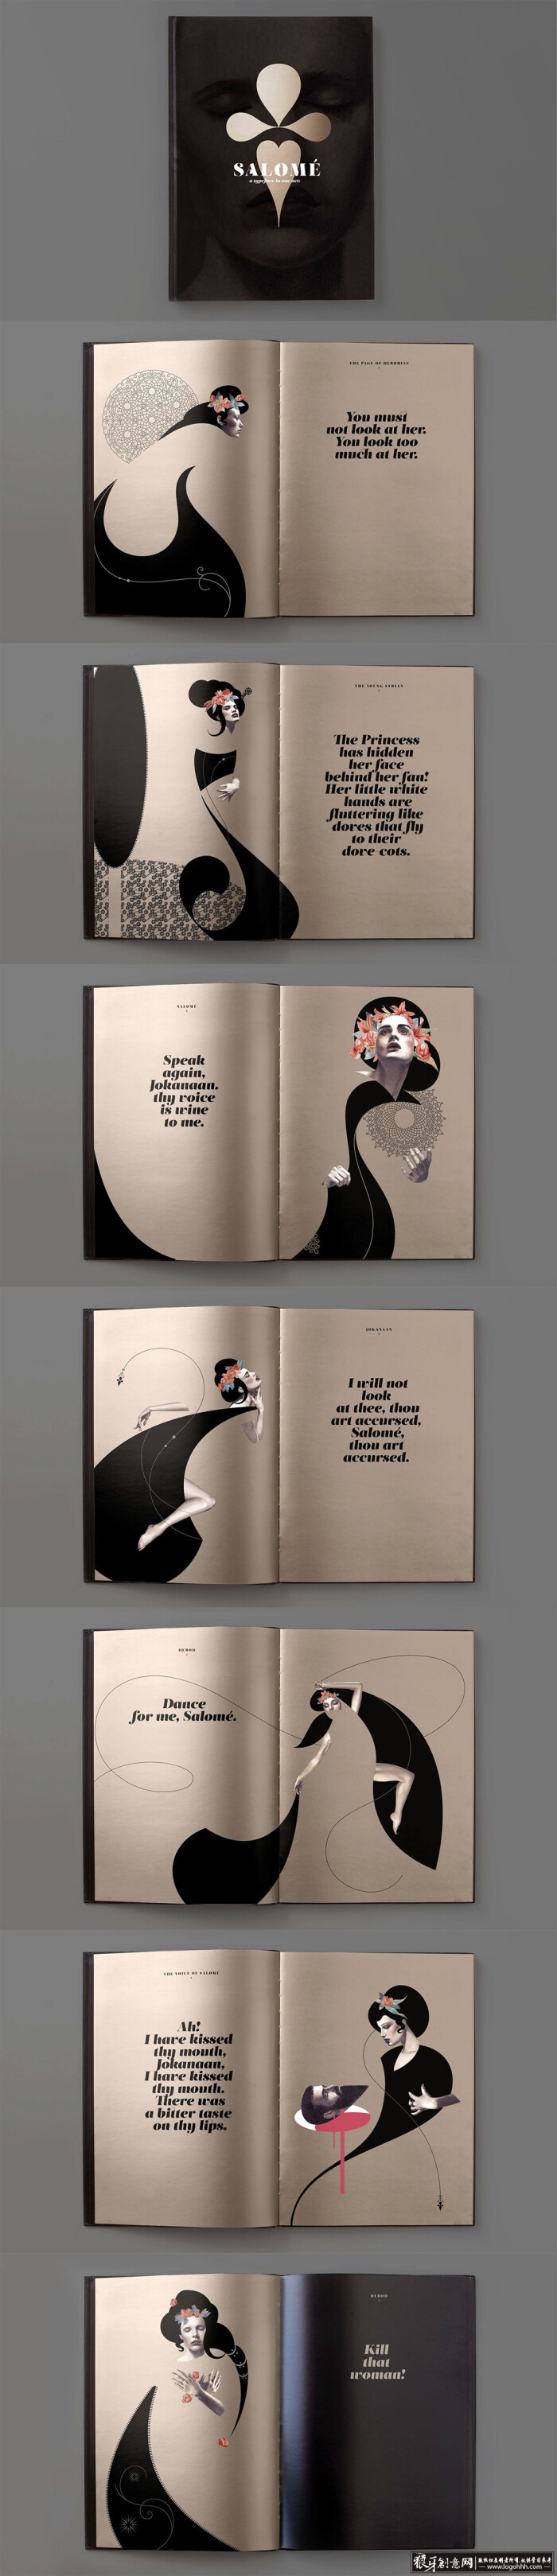 创意画册设计 时尚画册封面设计 大气画册设计 精美画册设计 创意插画